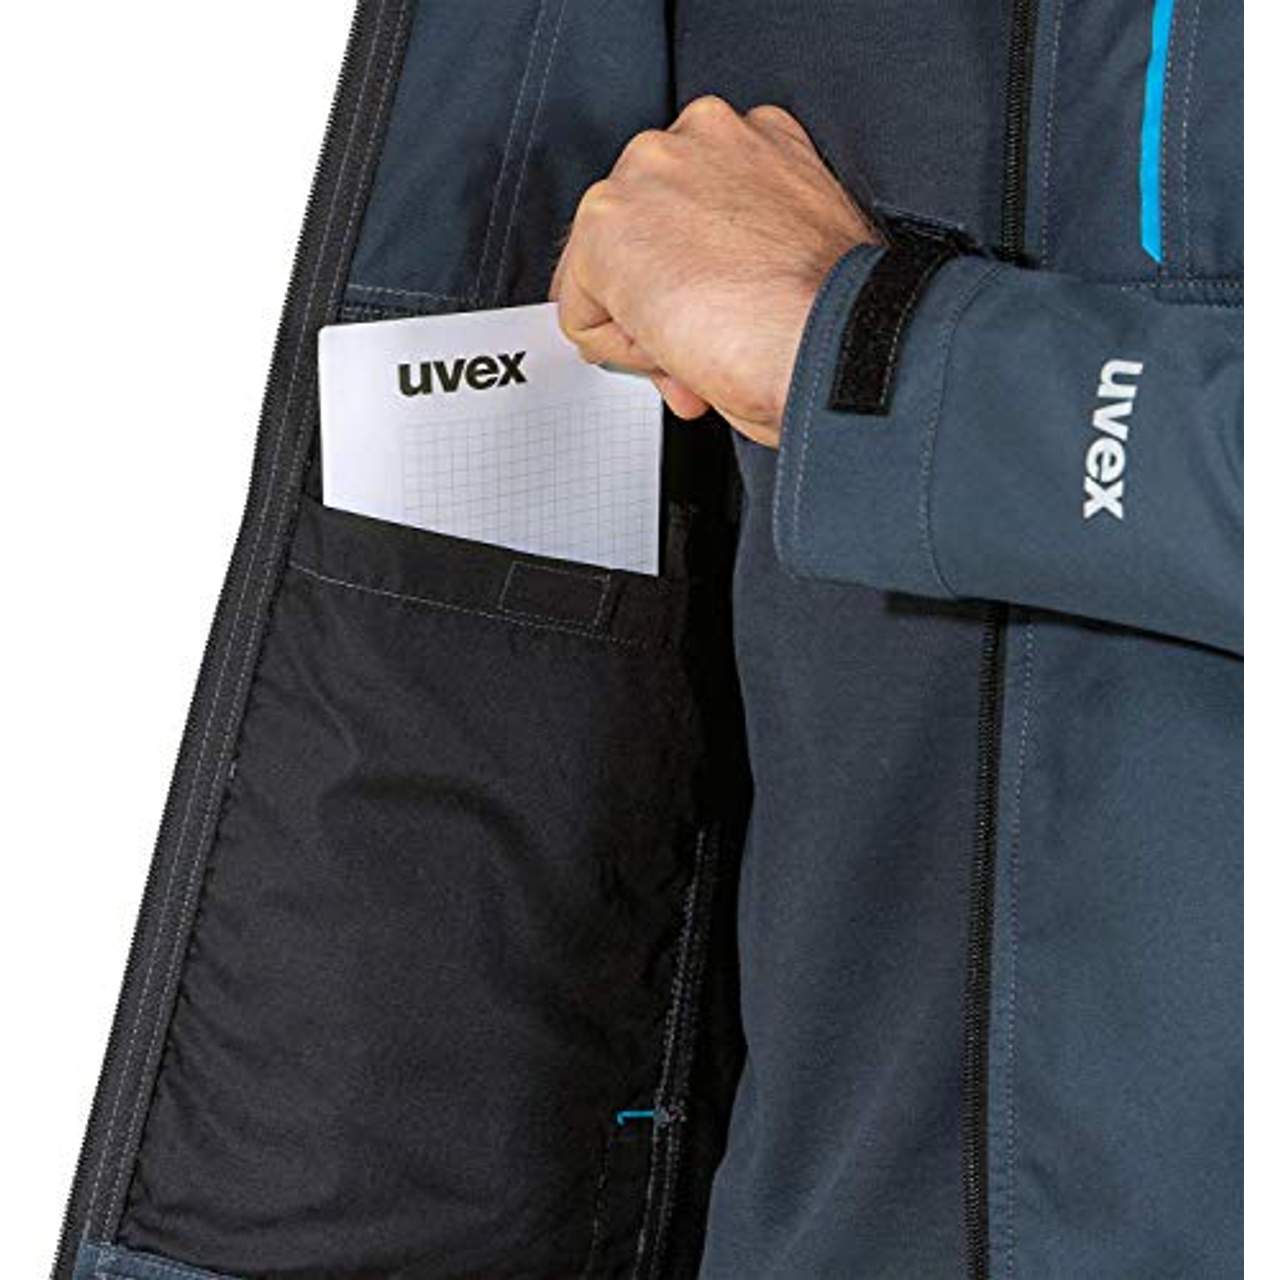 Uvex Tune-up Männer-Softshelljacke Jacke